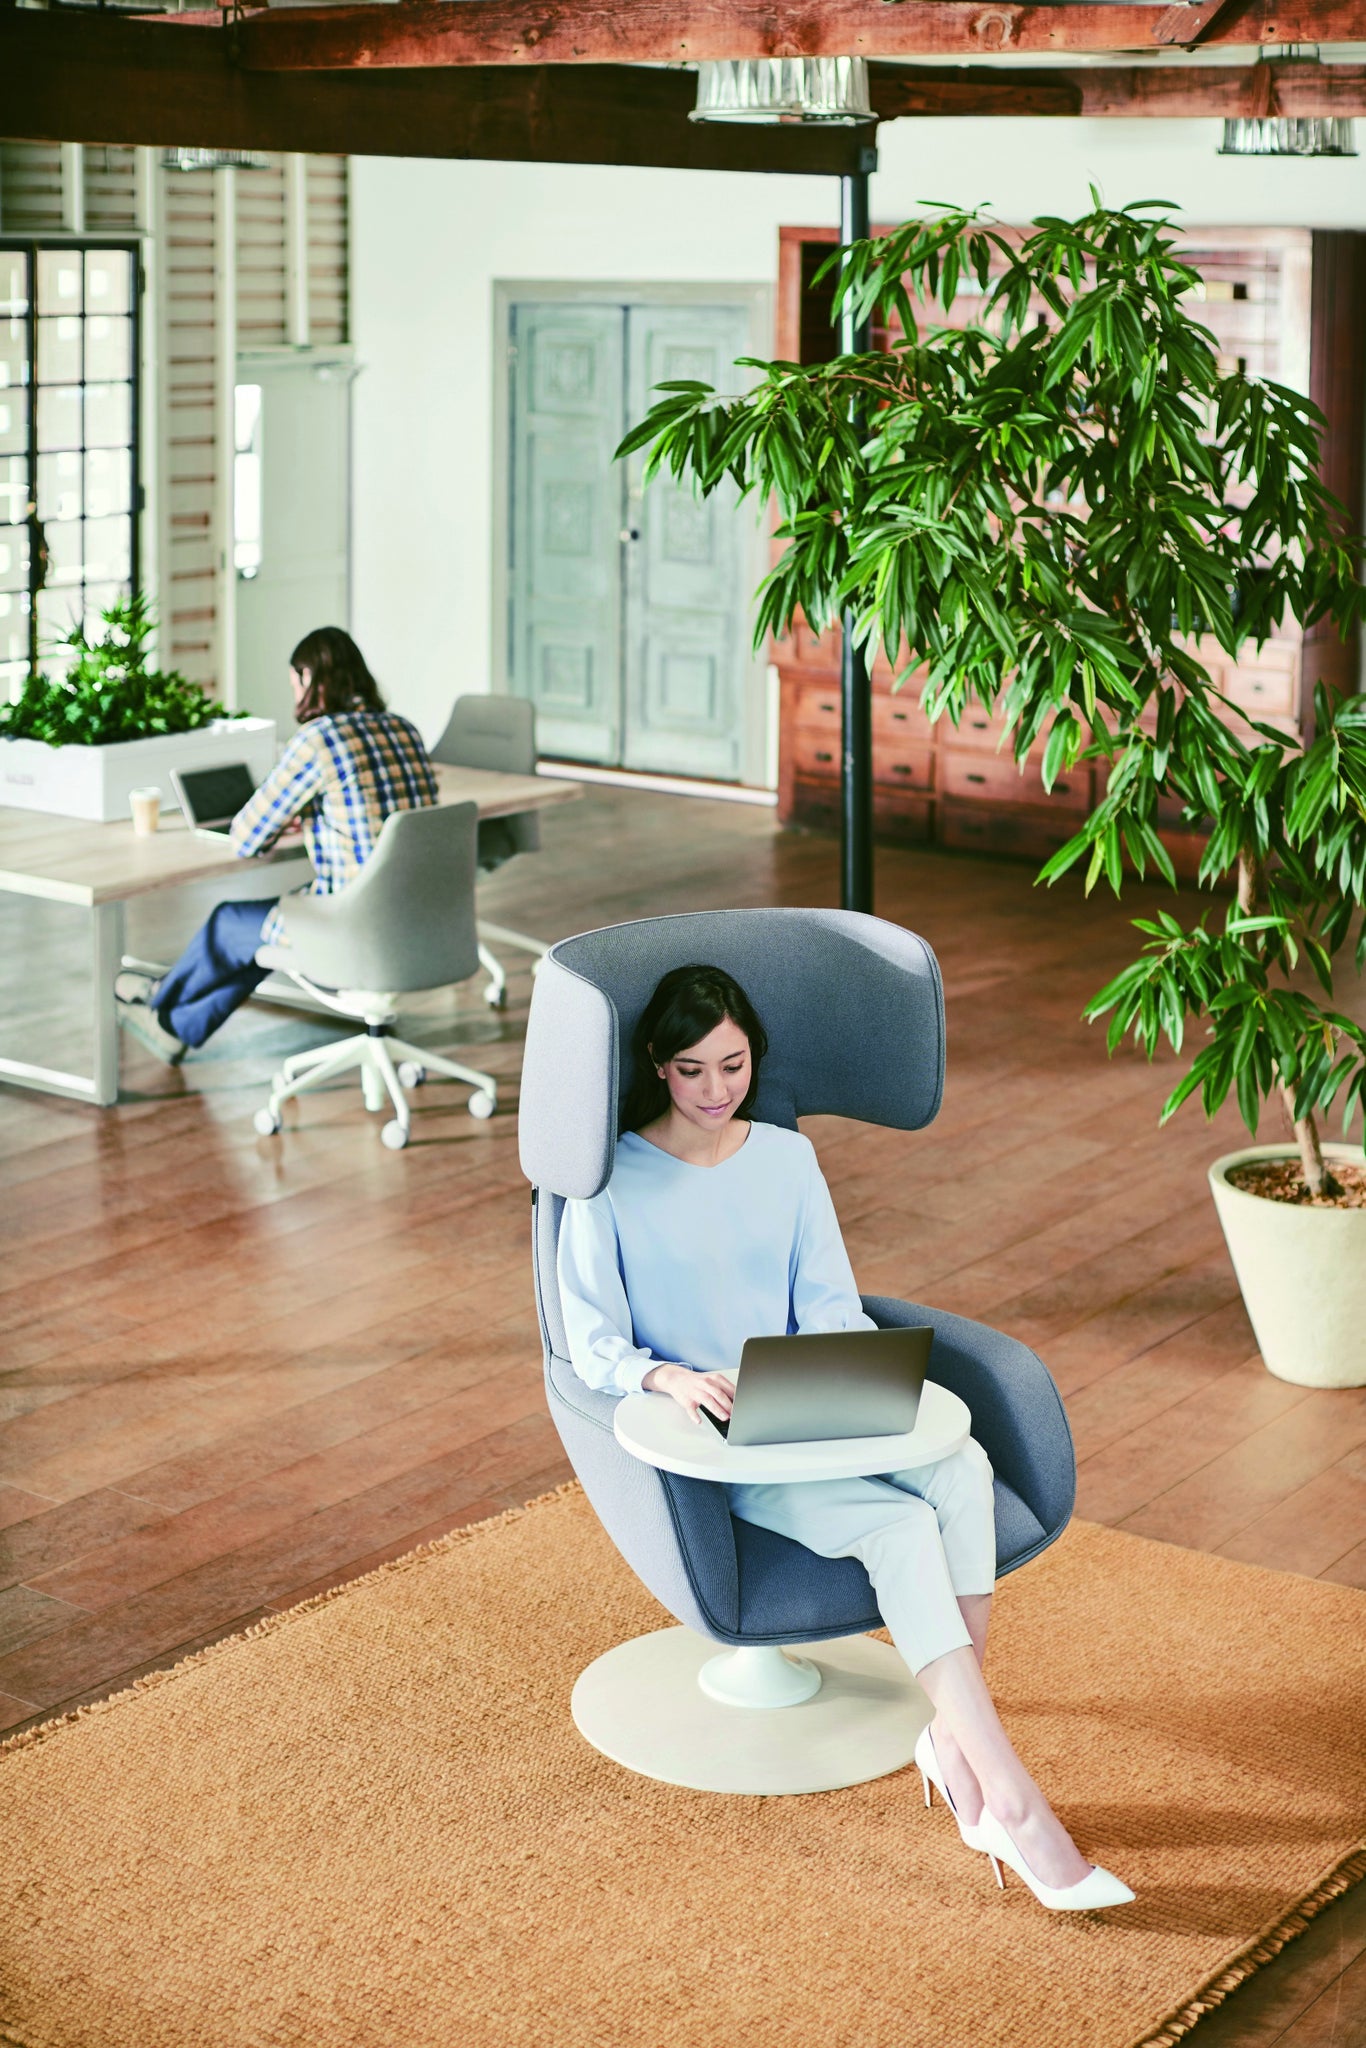 Sillón ejecutivo Lives Work Chair Lounge respaldo y asiento tapizado en tela con base fija nylon